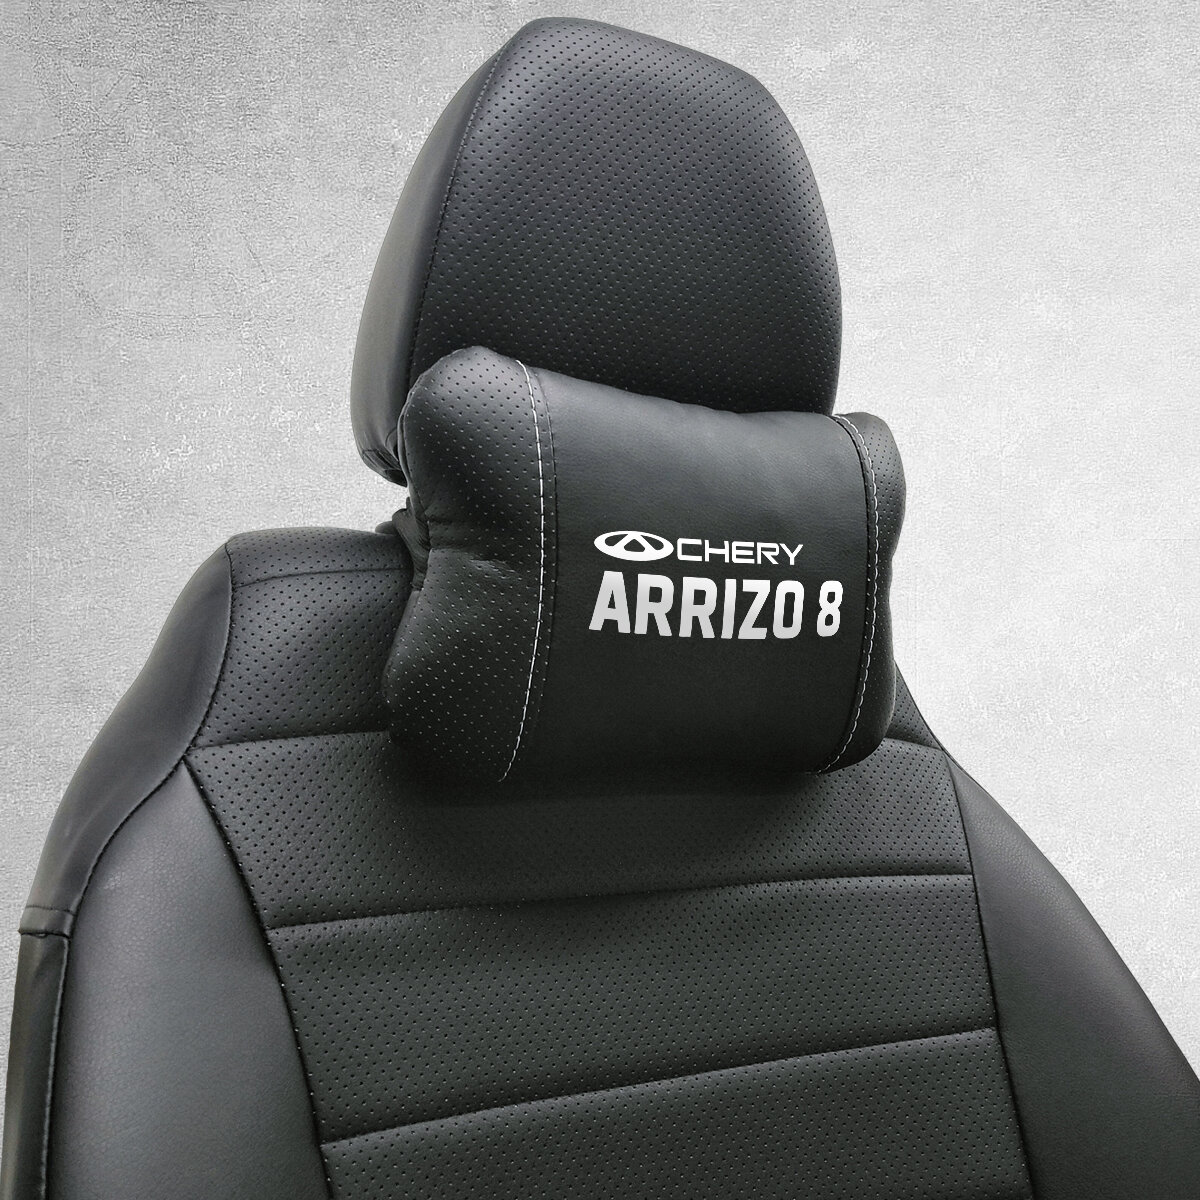 Автомобильная подушка под шею на подголовник эмблема Chery Arizzo 8 , для Чери Ариззо 8. Подушка для шеи в машину. Подушка на сиденье автомобиля.